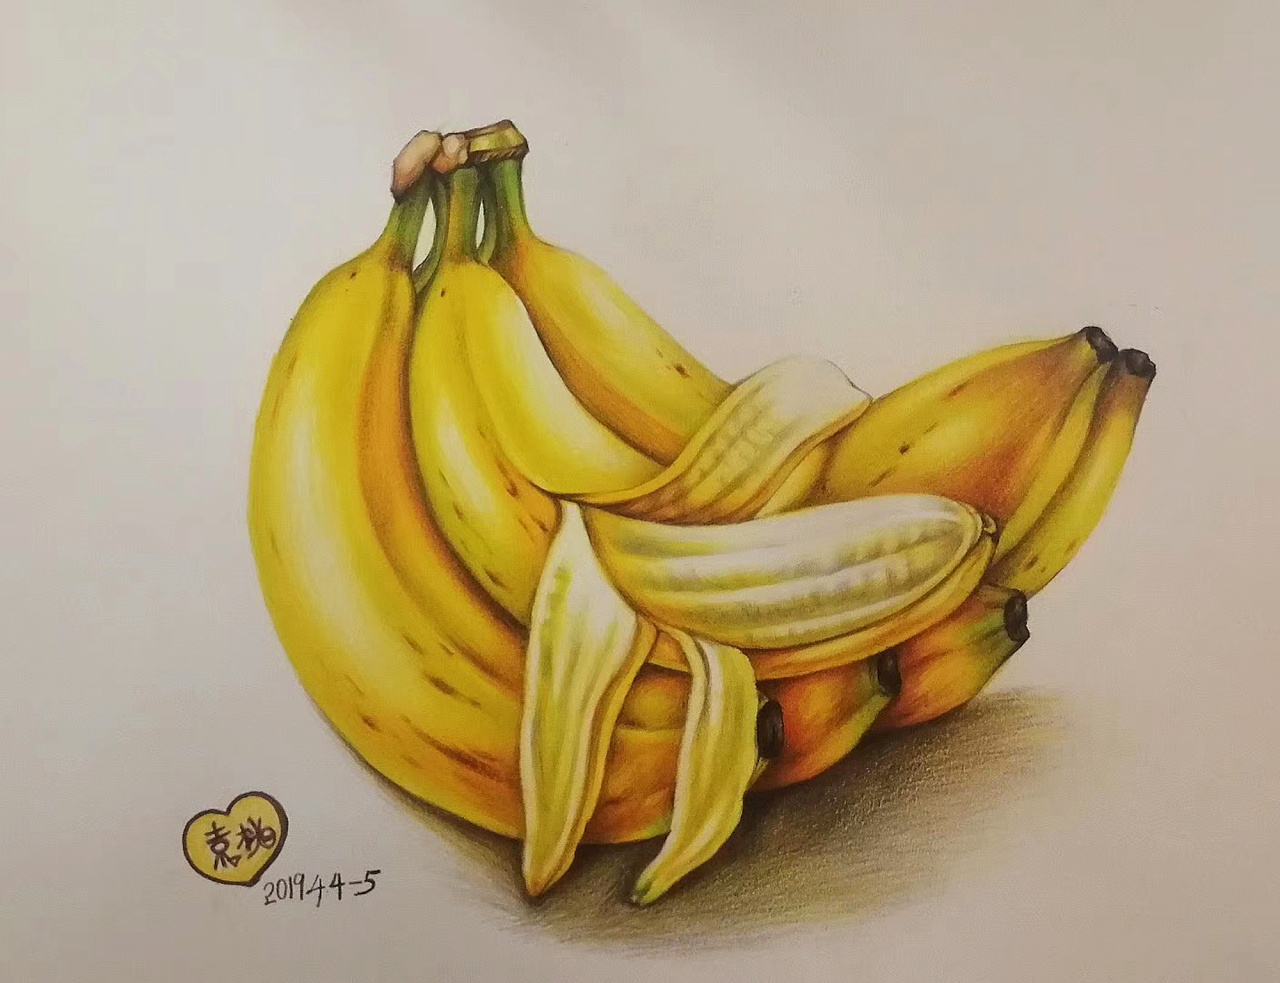 彩铅水果彩铅香蕉,纯艺术,彩铅绘画